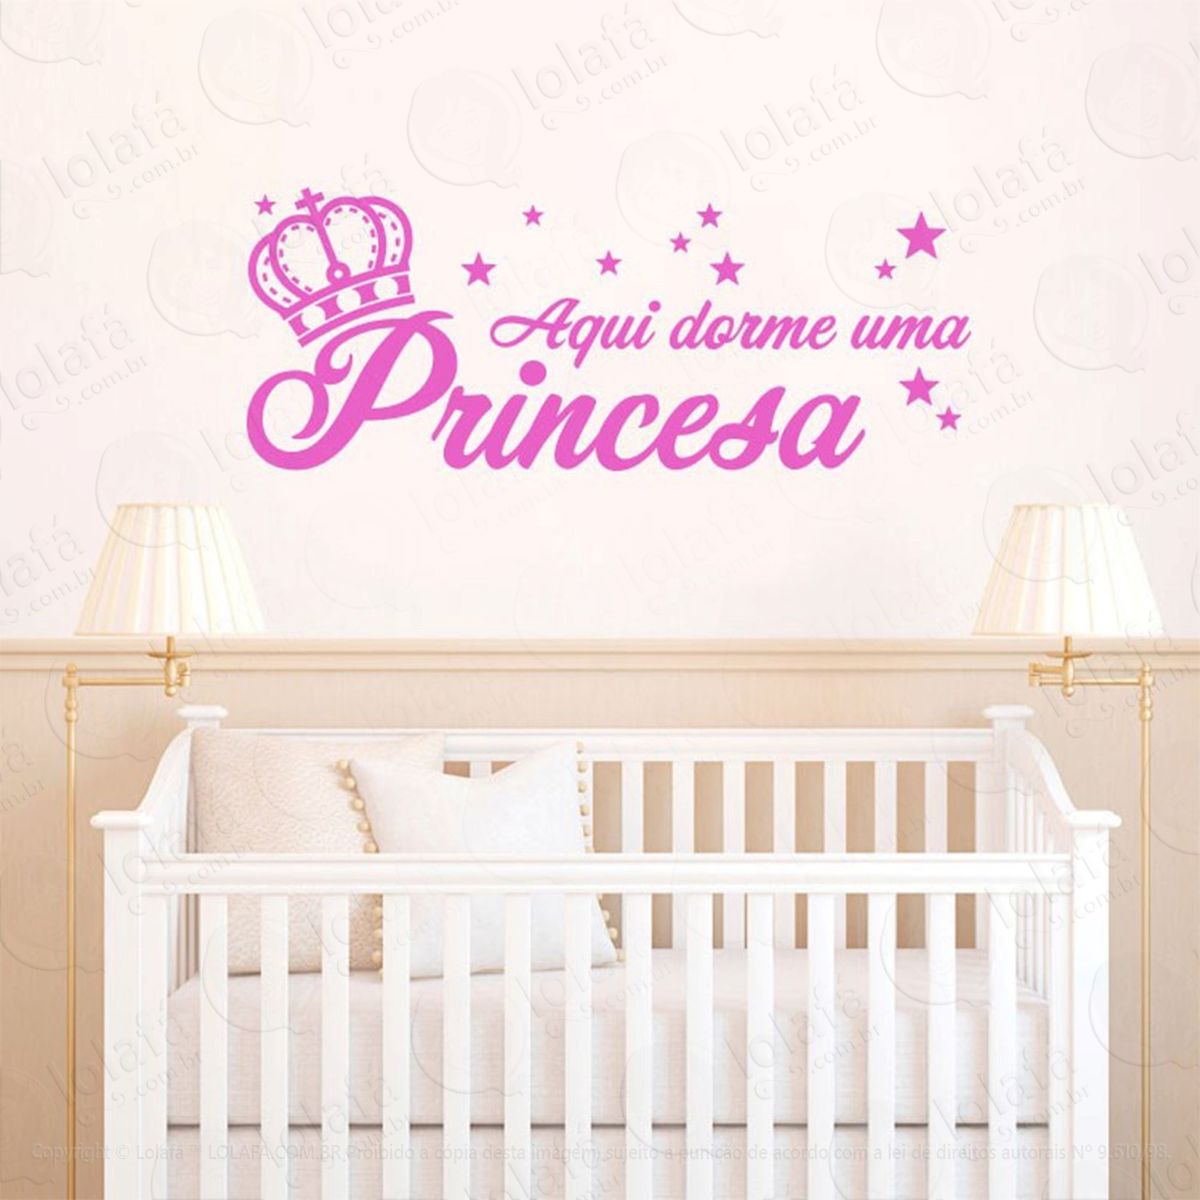 aqui dorme uma princesa adesivo de parede frase personalizada para sala, quarto, porta e vidro - mod:83